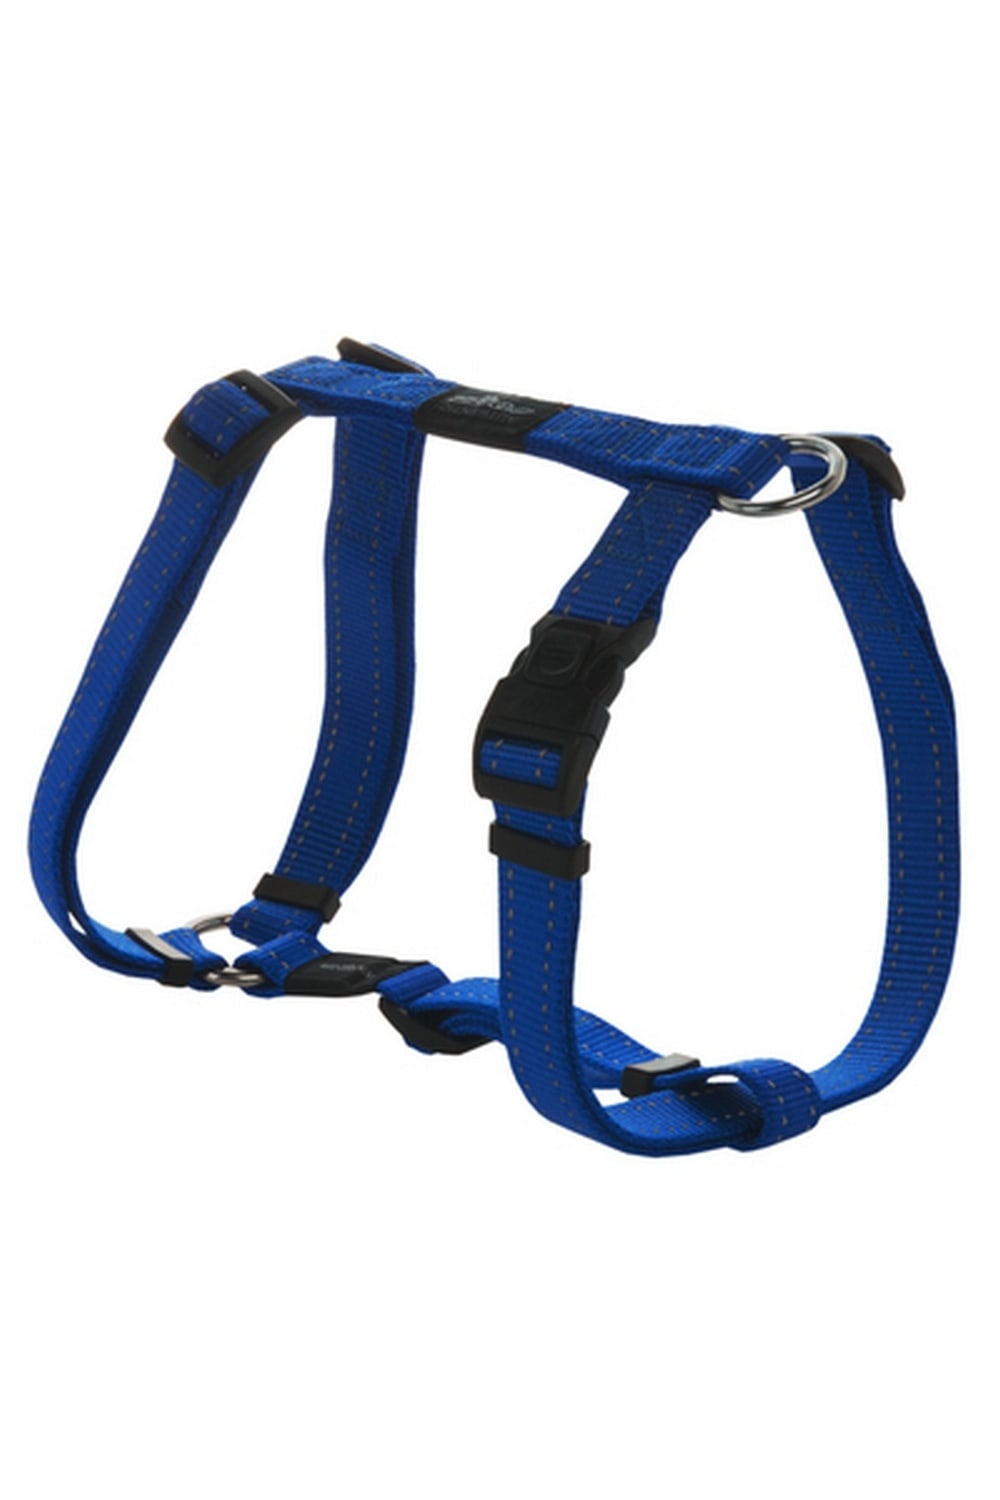 Rogz Utility Dog H-Harness (Blue) (Large)